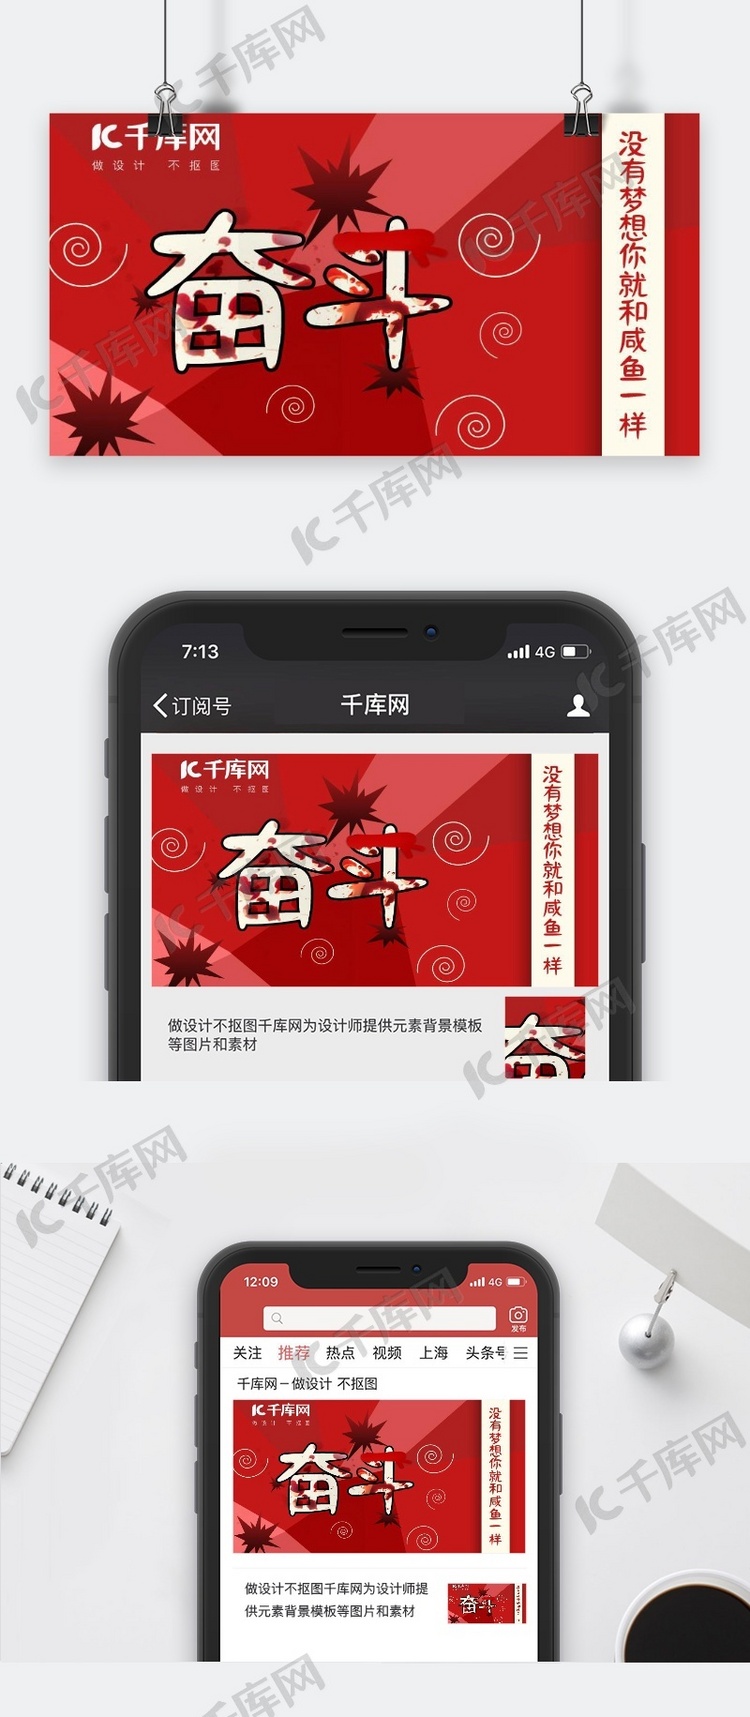 红色系浴血奋斗励志手机配图微信公众号封面